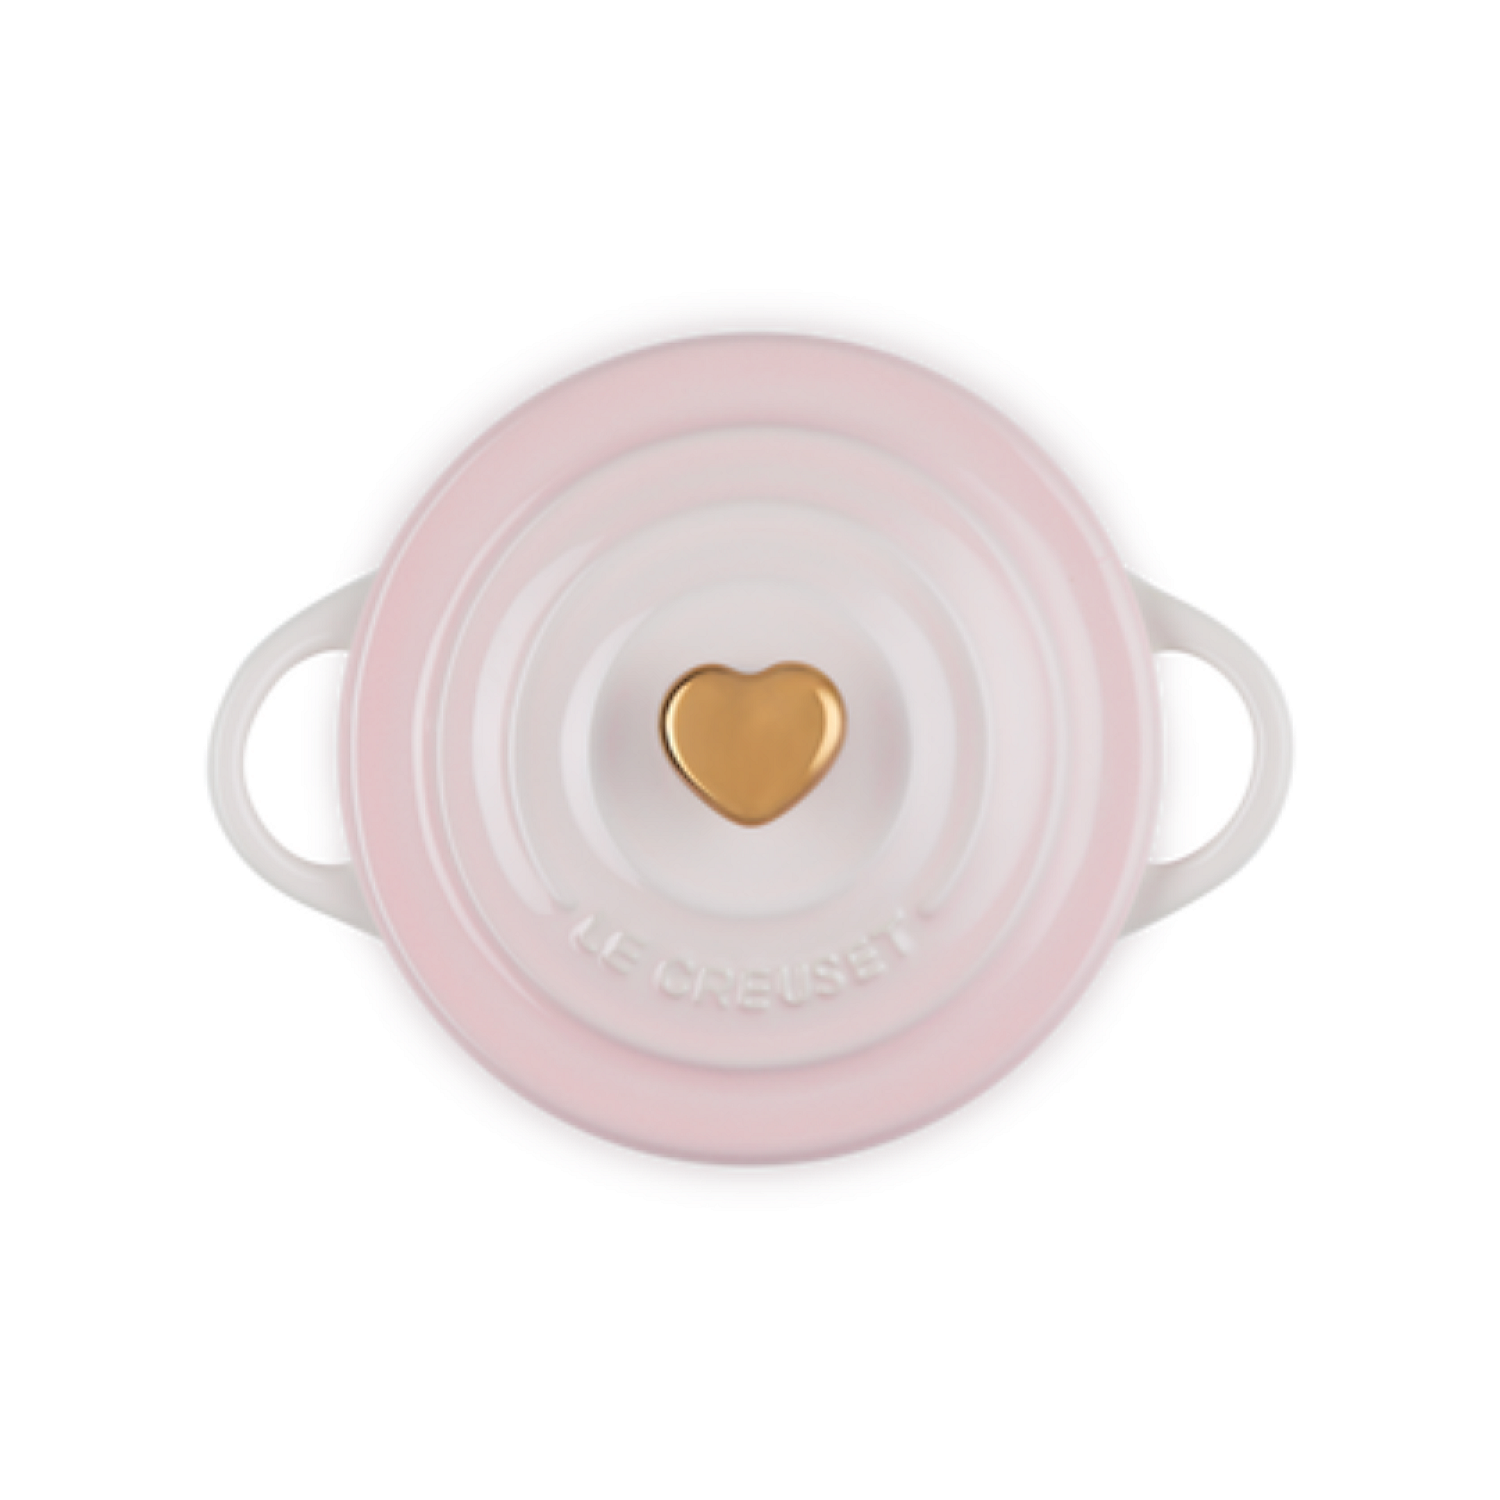 Le Creuset 2 Quart Shell Pink Heart Cocotte